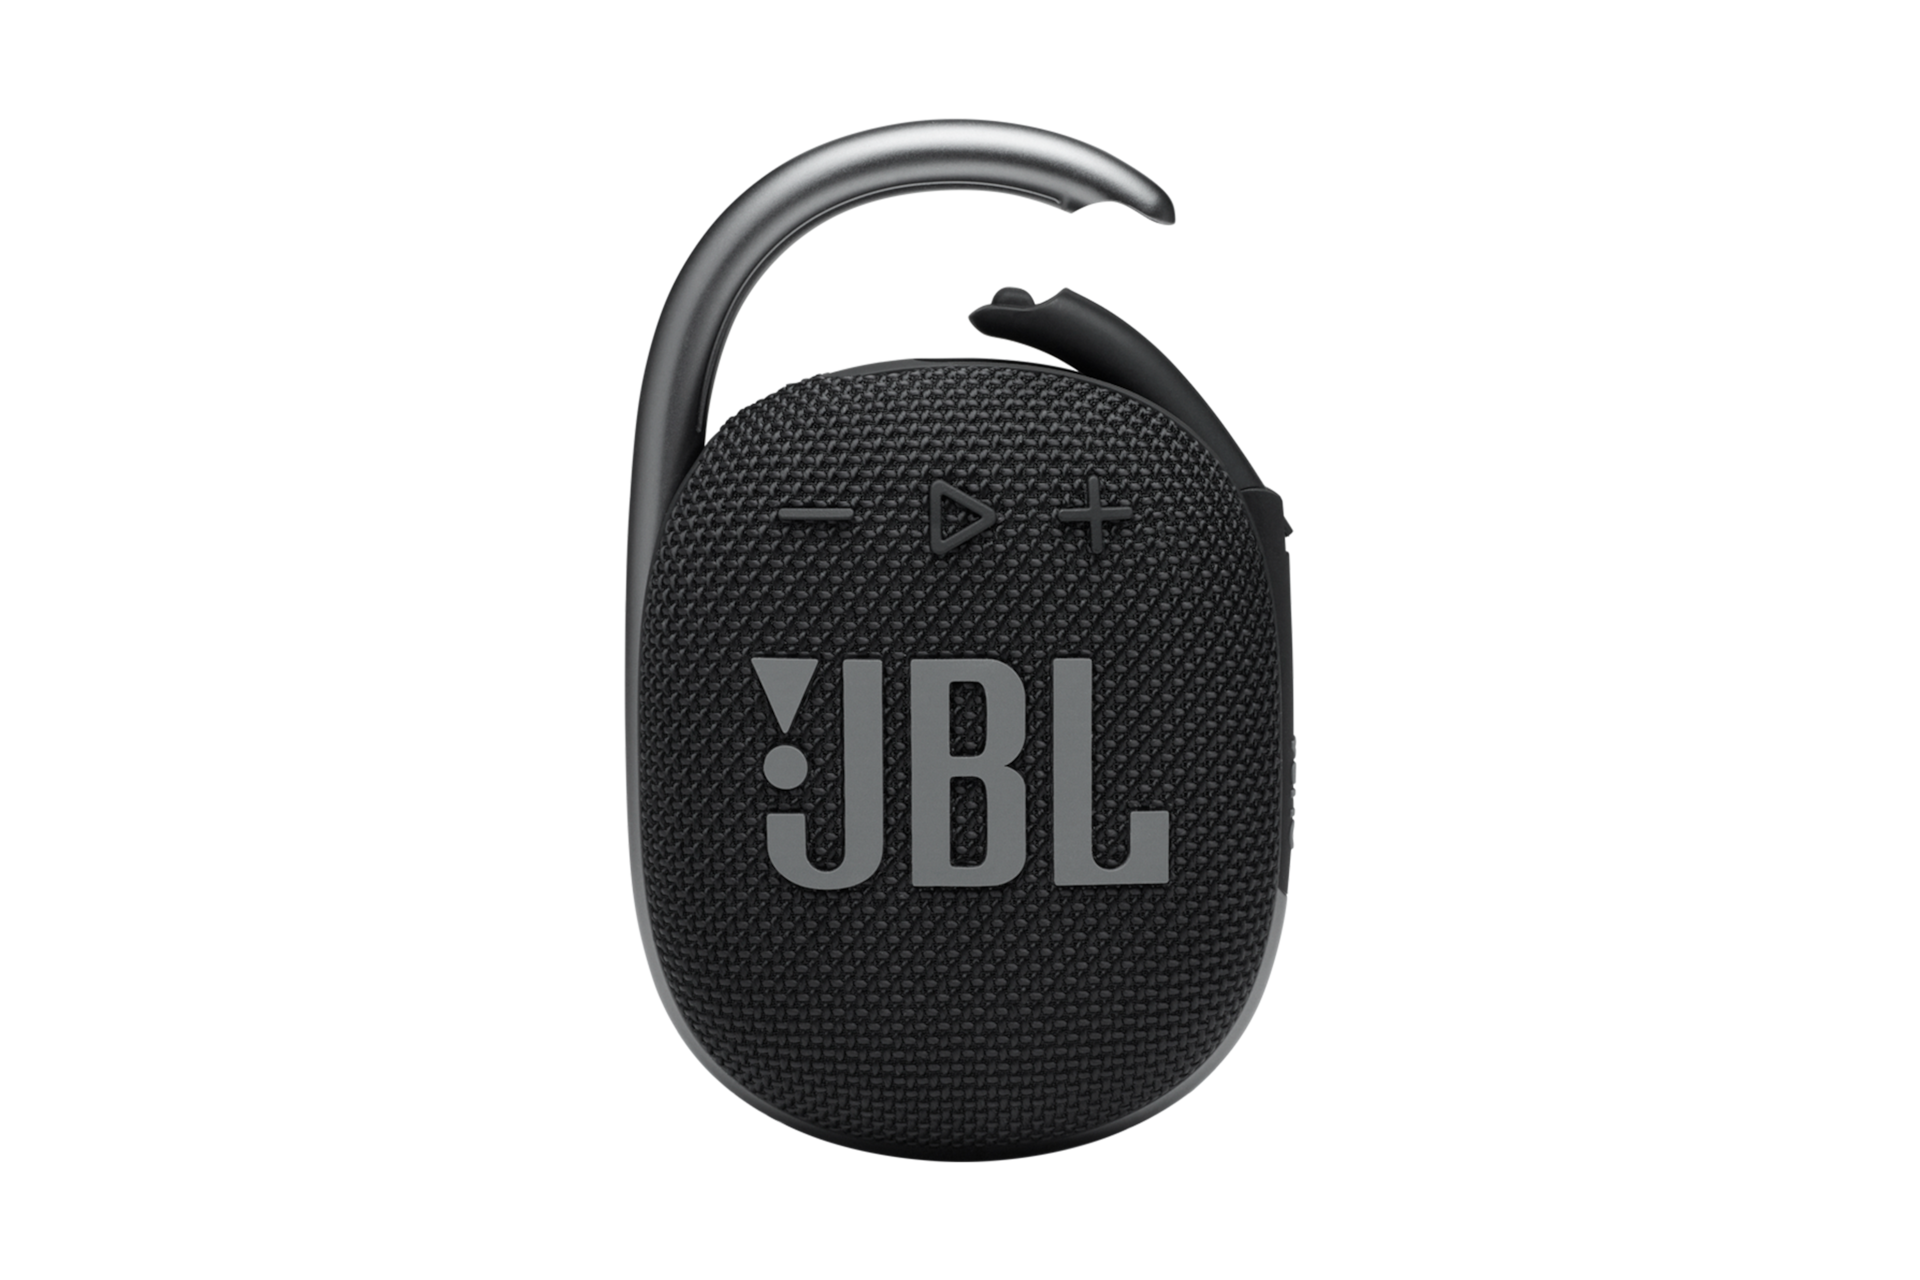 JBL CLIP 4 블루투스 스피커 블랙 제품정면